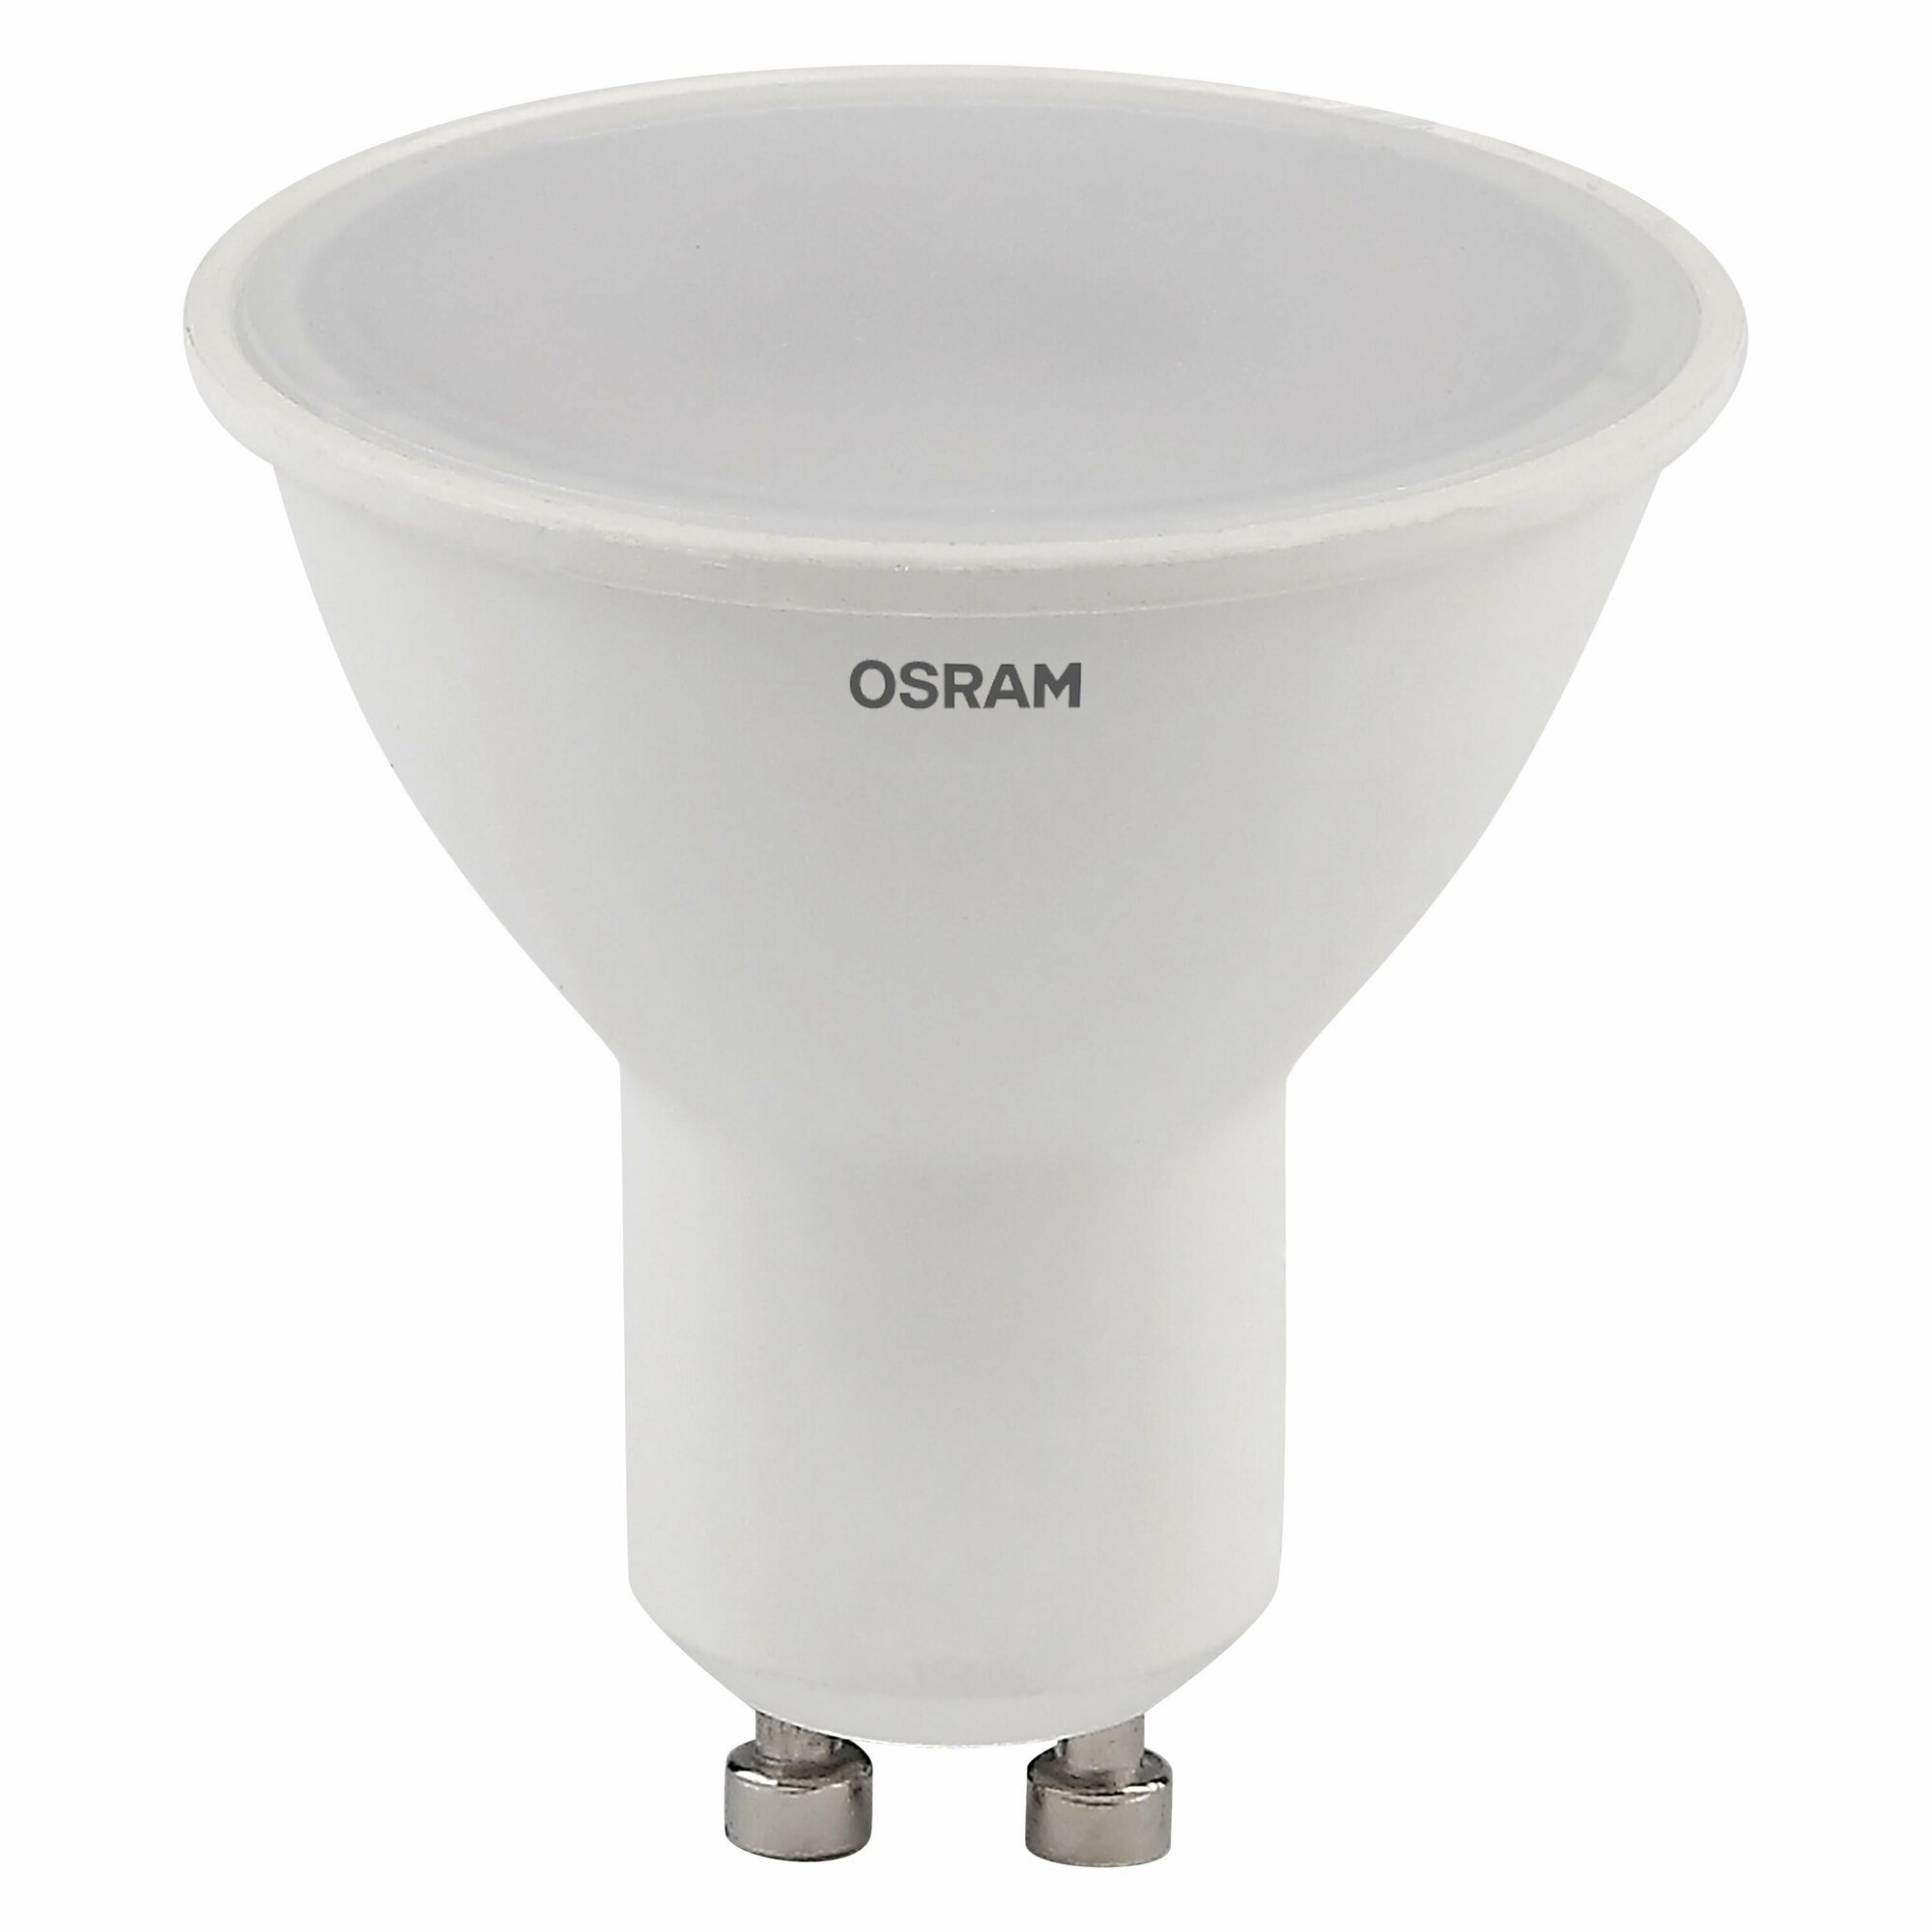 Лампочка светодиодная OSRAM LED Value PAR16, 480 лм, 6 Вт, 3000К (теплый белый свет). Цоколь GU10